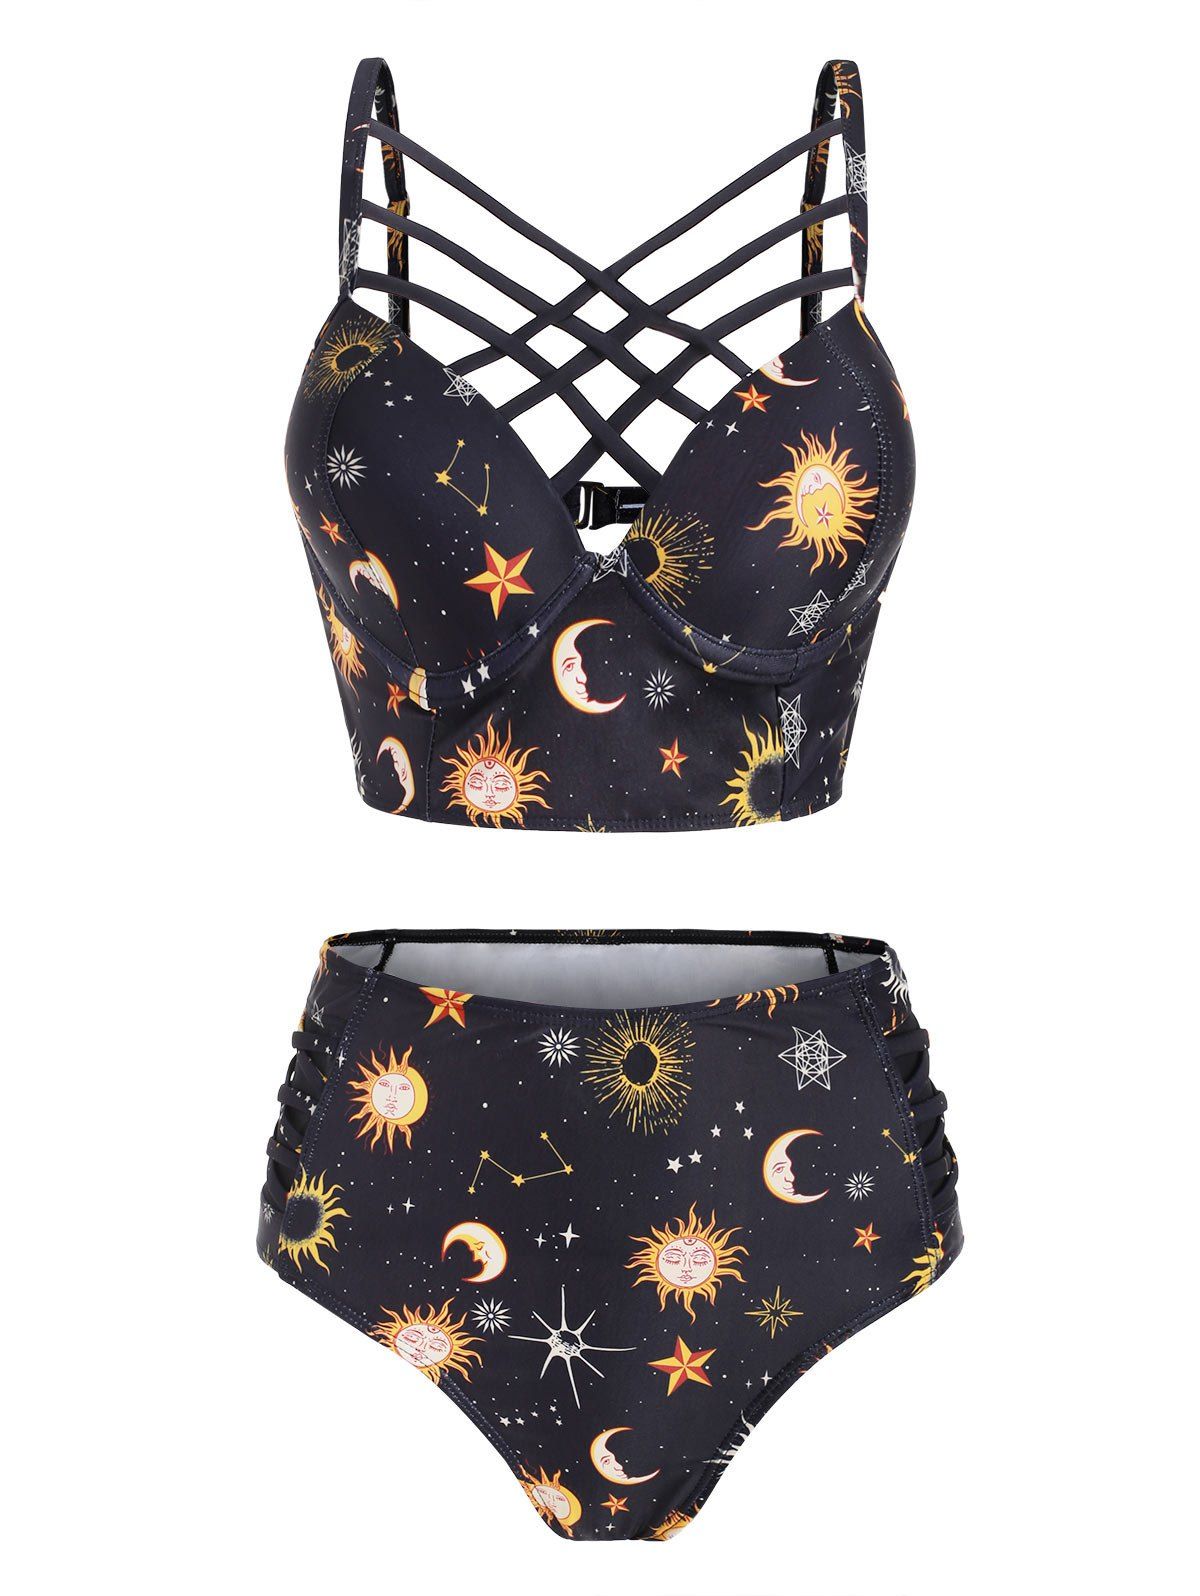 Vintage Tankini Swimsuit Corset Moon Sun Bathing Suit Star Print Lattice Summer Beach Swimwear - YELLOW L